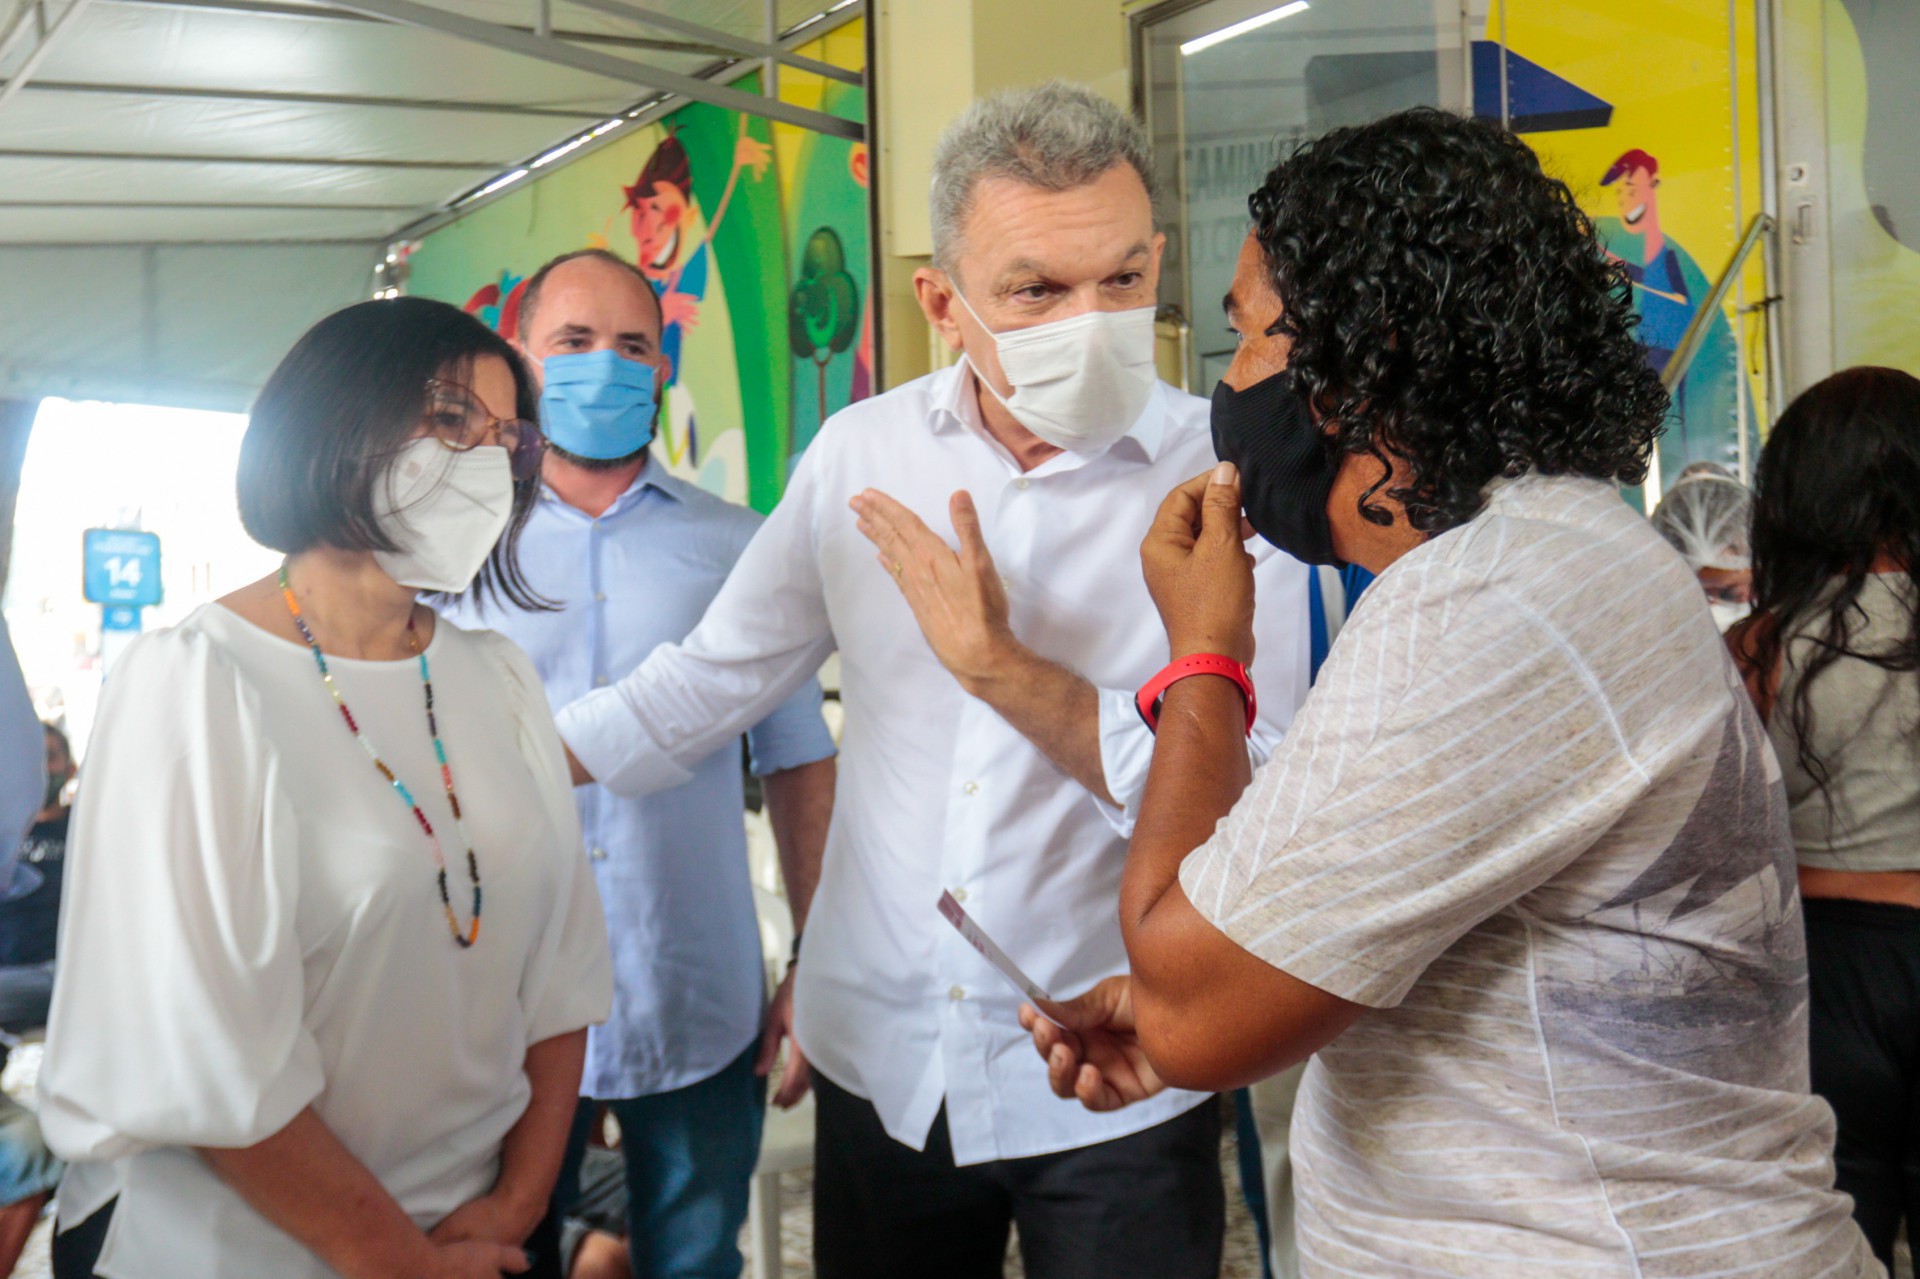 PREFEITO DE FORTALEZA, José Sarto, esteve na Praça do Ferreira e projetou início da vacinação de 59 a 18 anos para a próxima semana (Foto: Bárbara Moira)